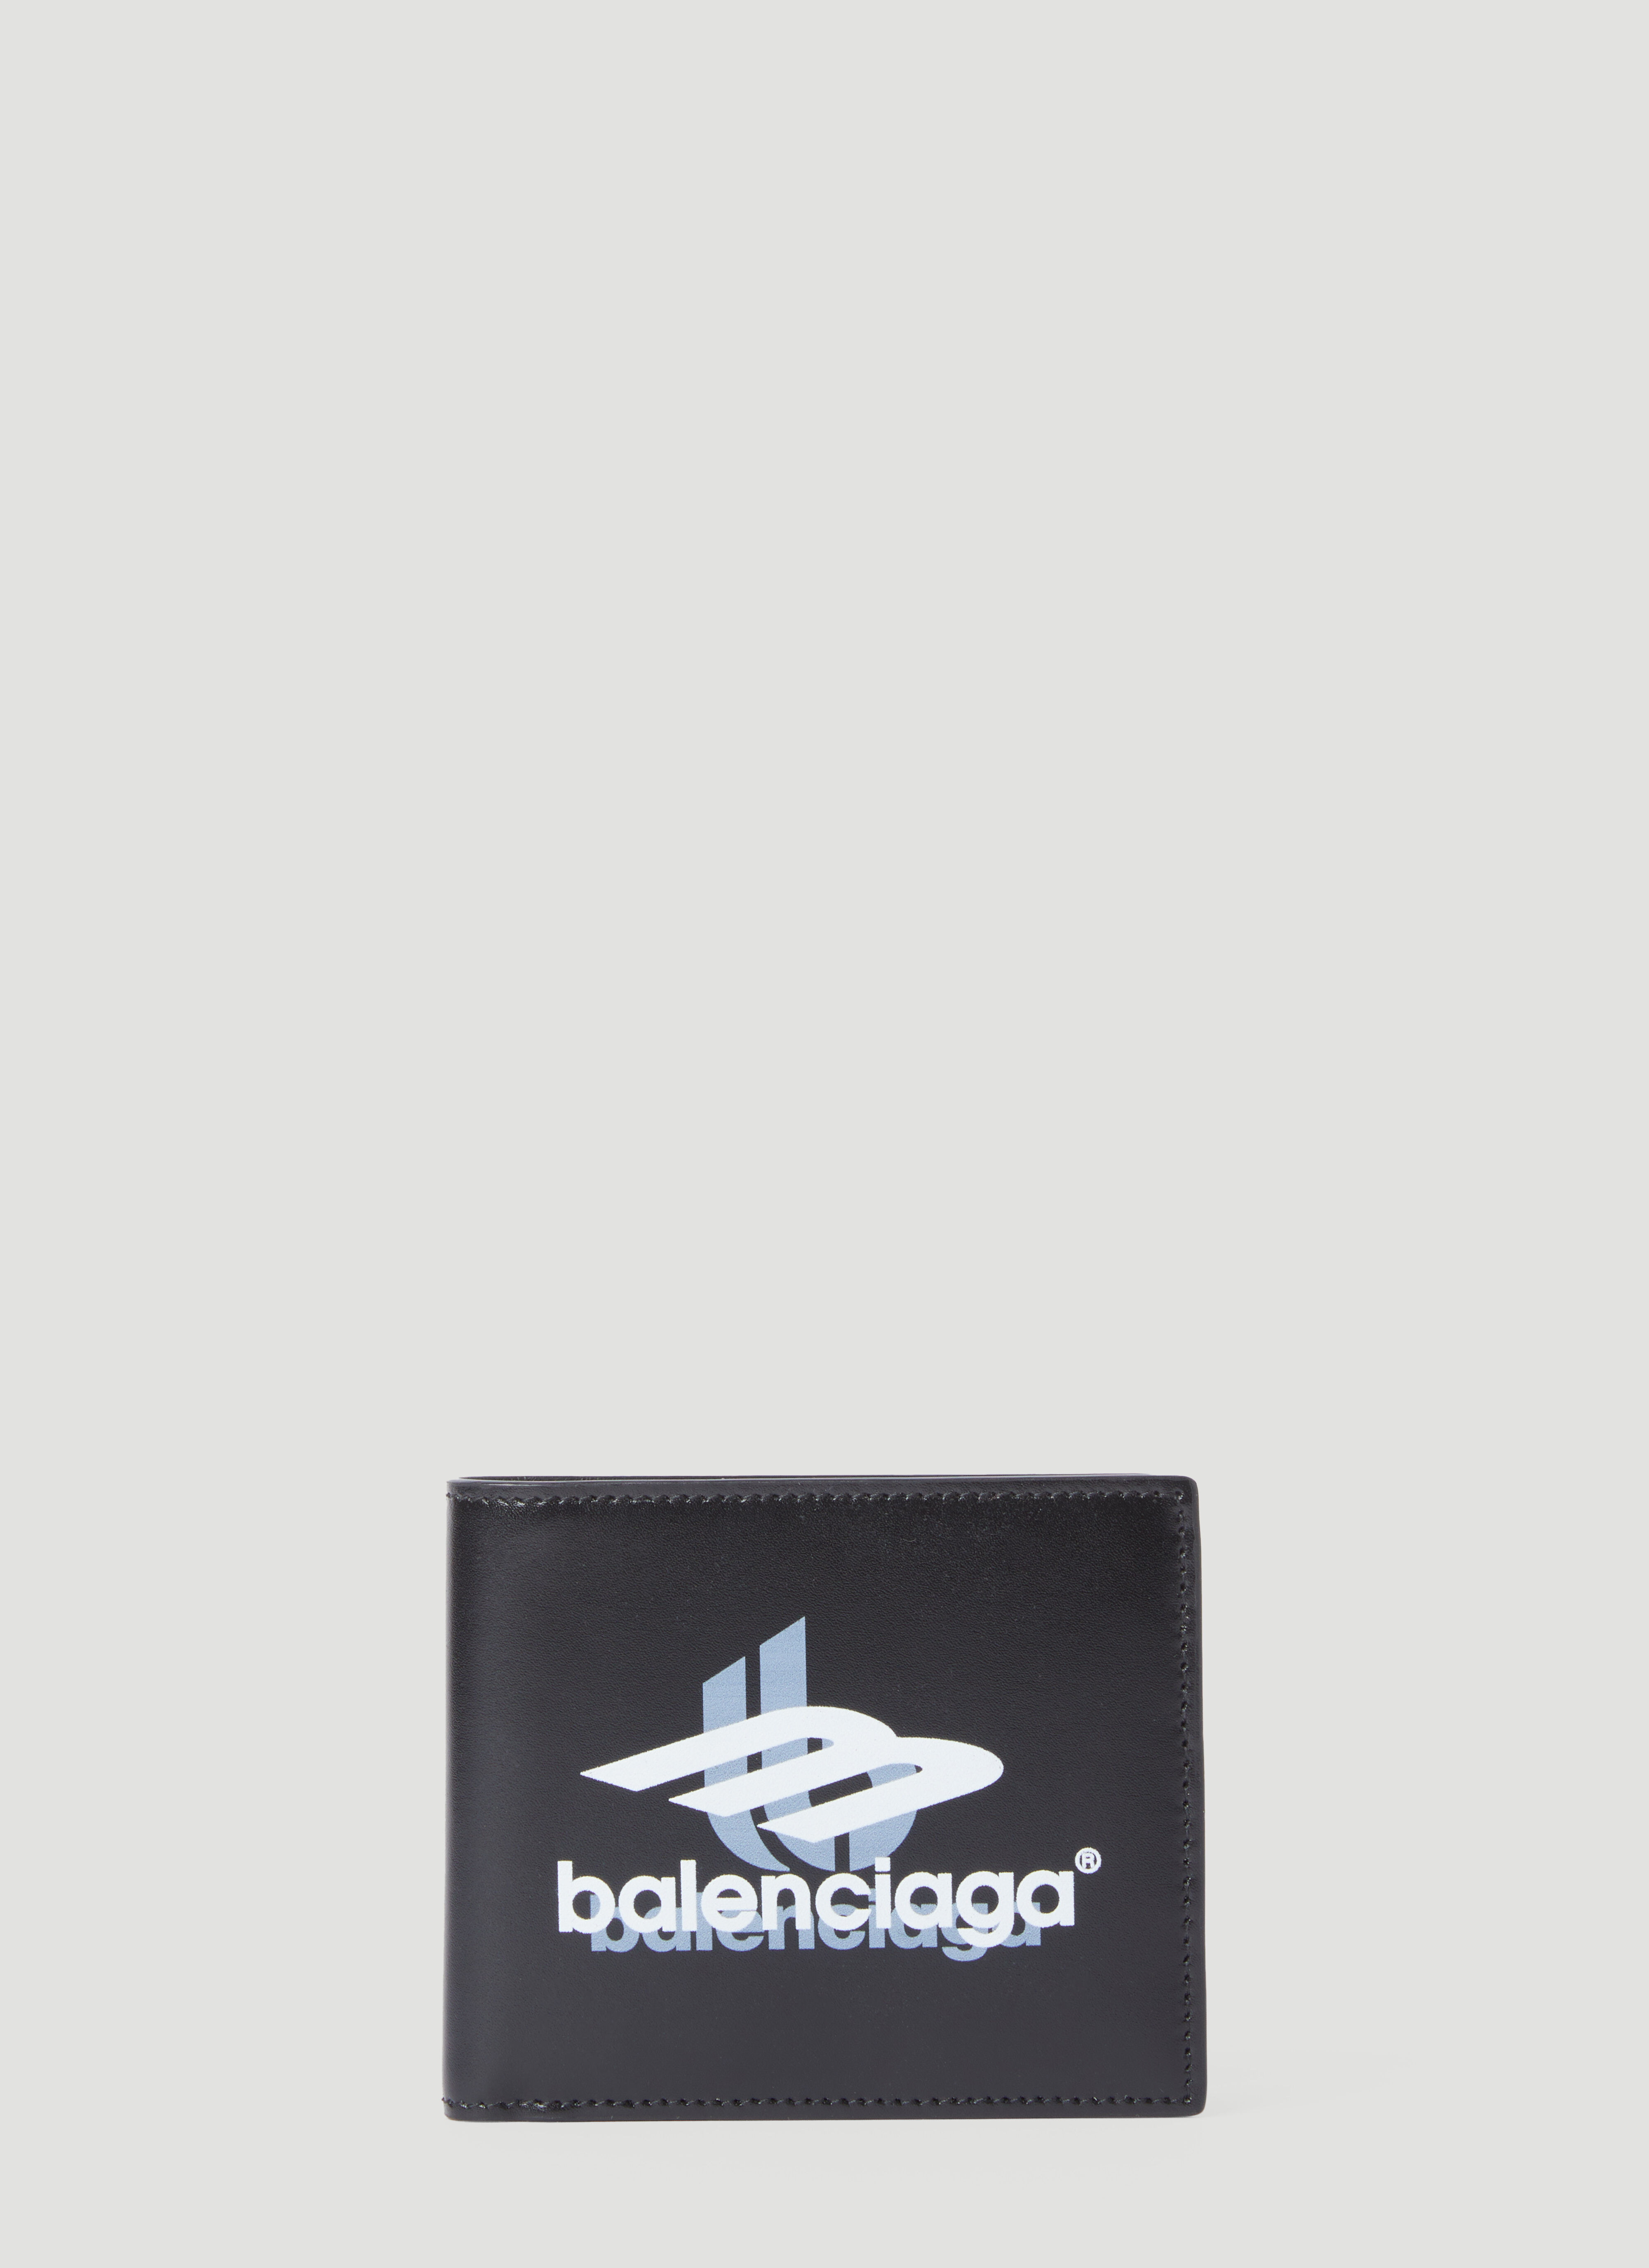 Balenciaga Logo Print Bi-Fold Wallet Black bal0156006